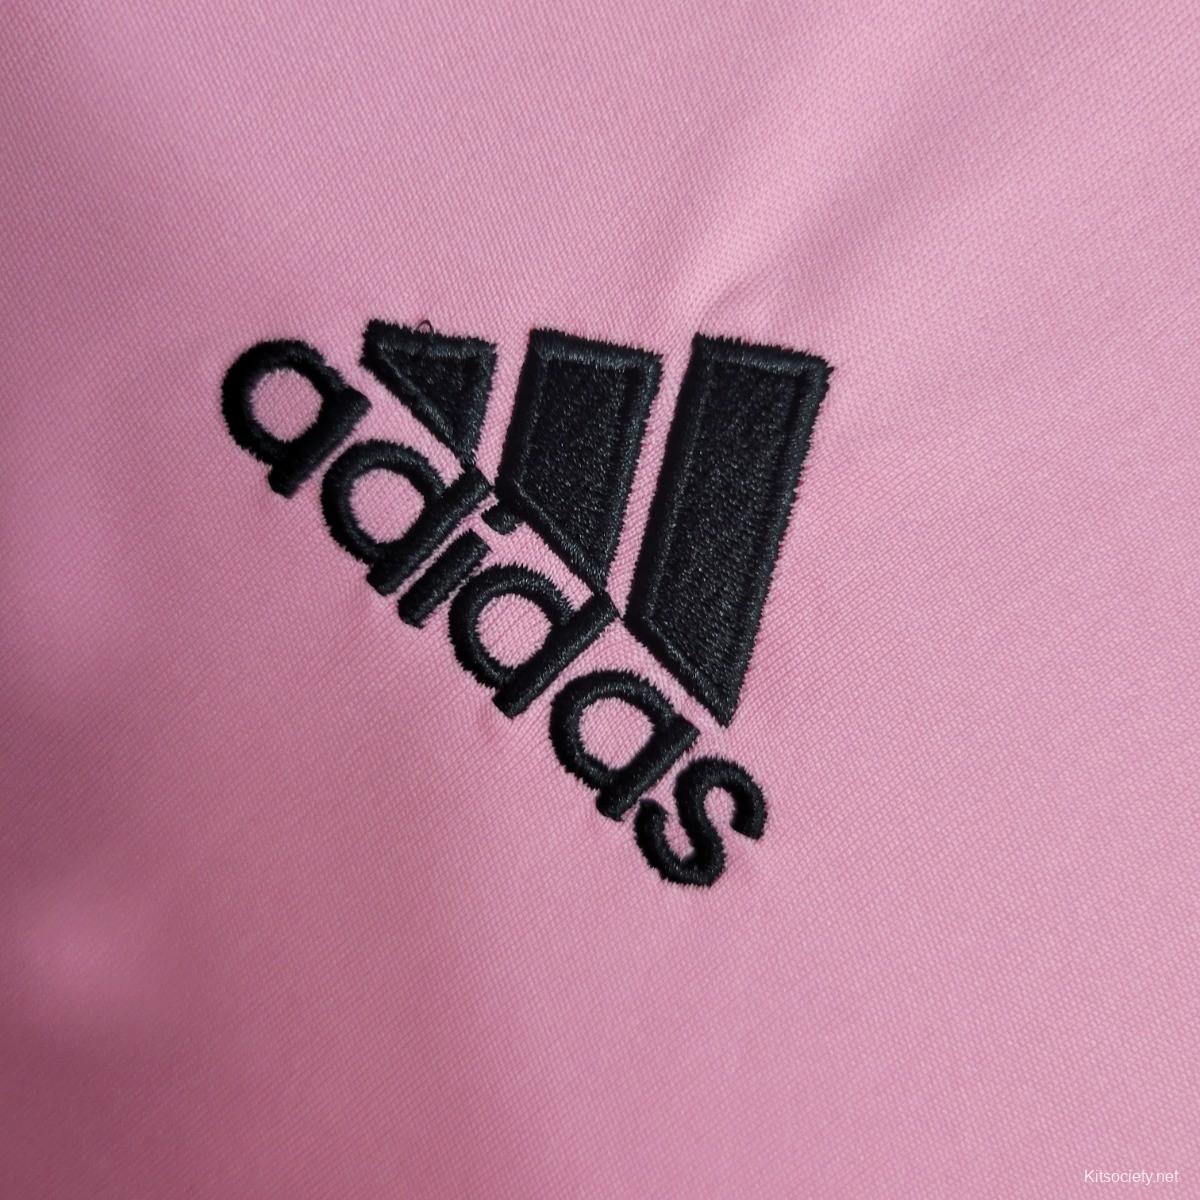 pink adidas logo wallpaper